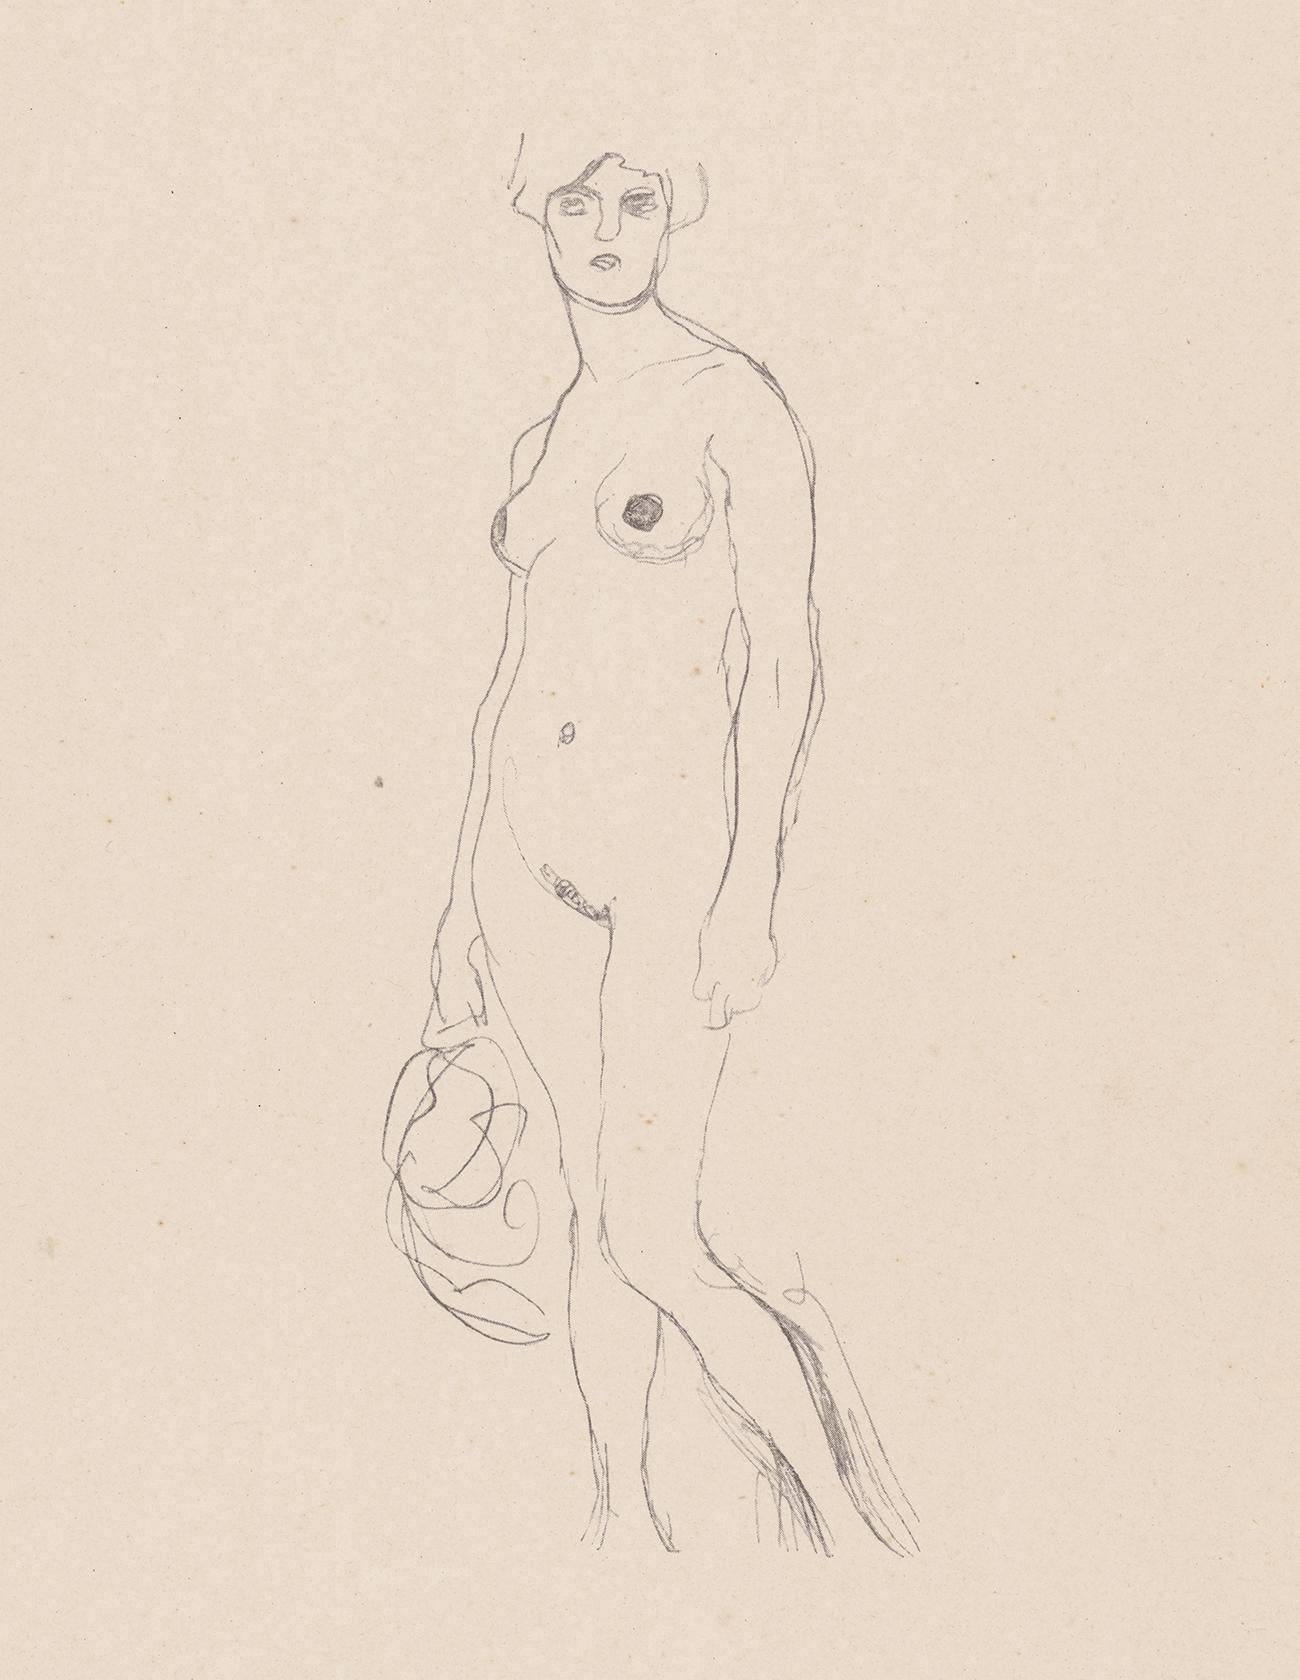 Nu debout, Gustav Klimt Handzeichnungen (Sketch), Thyrsos Verlag, 1922 - Print de (after) Gustav Klimt